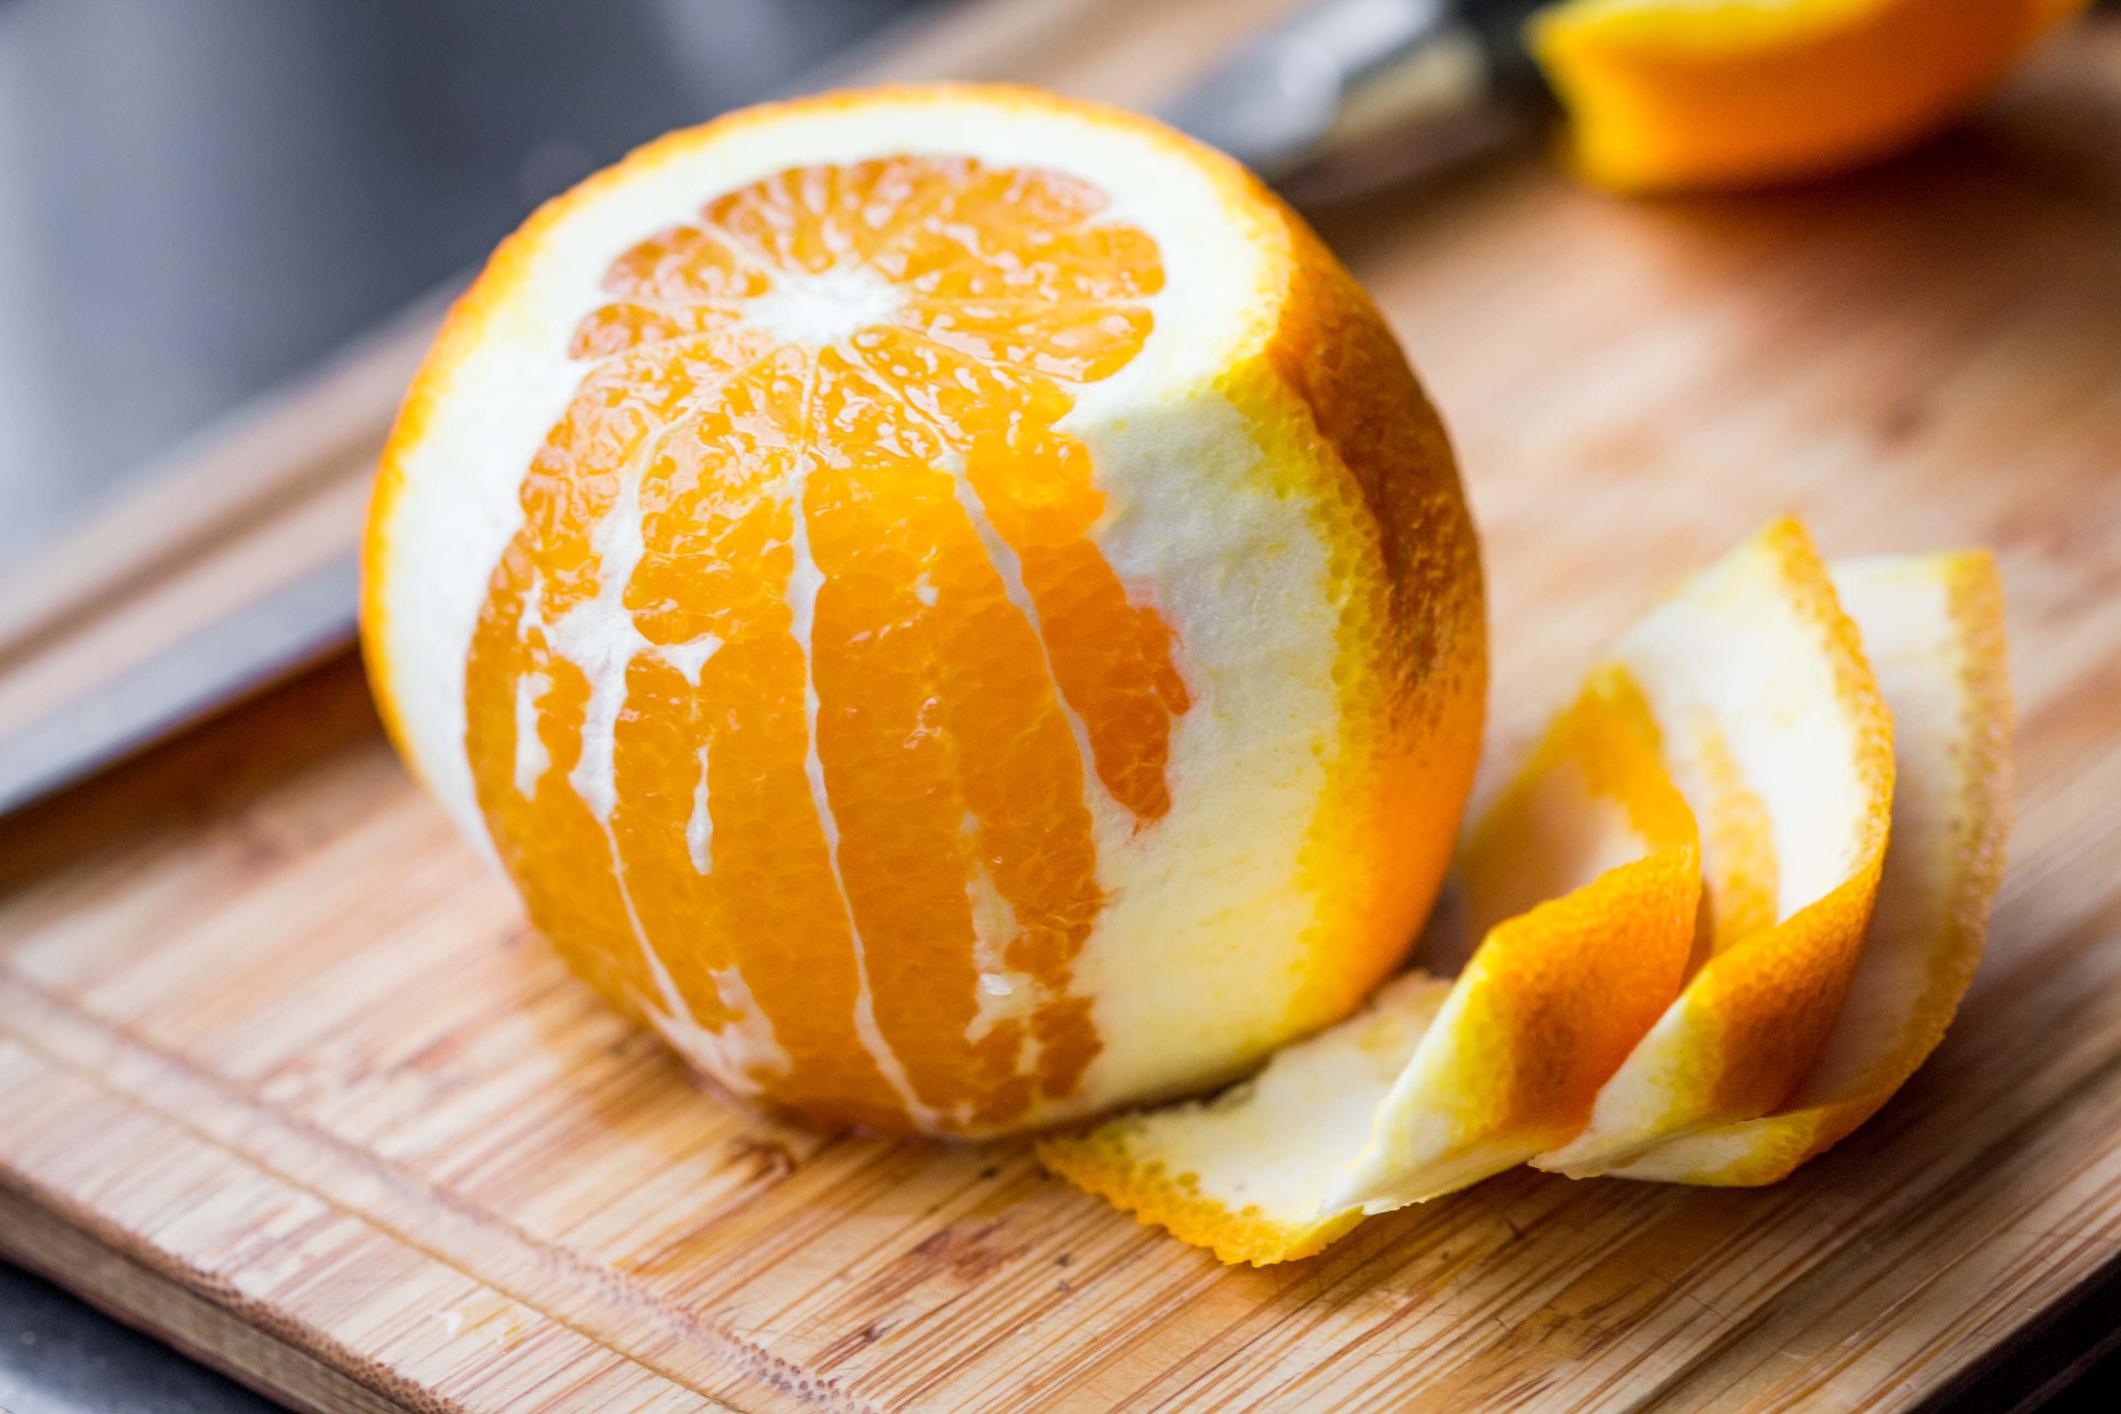 Des écorces d'orange pour améliorer la santé cardiovasculaire ?